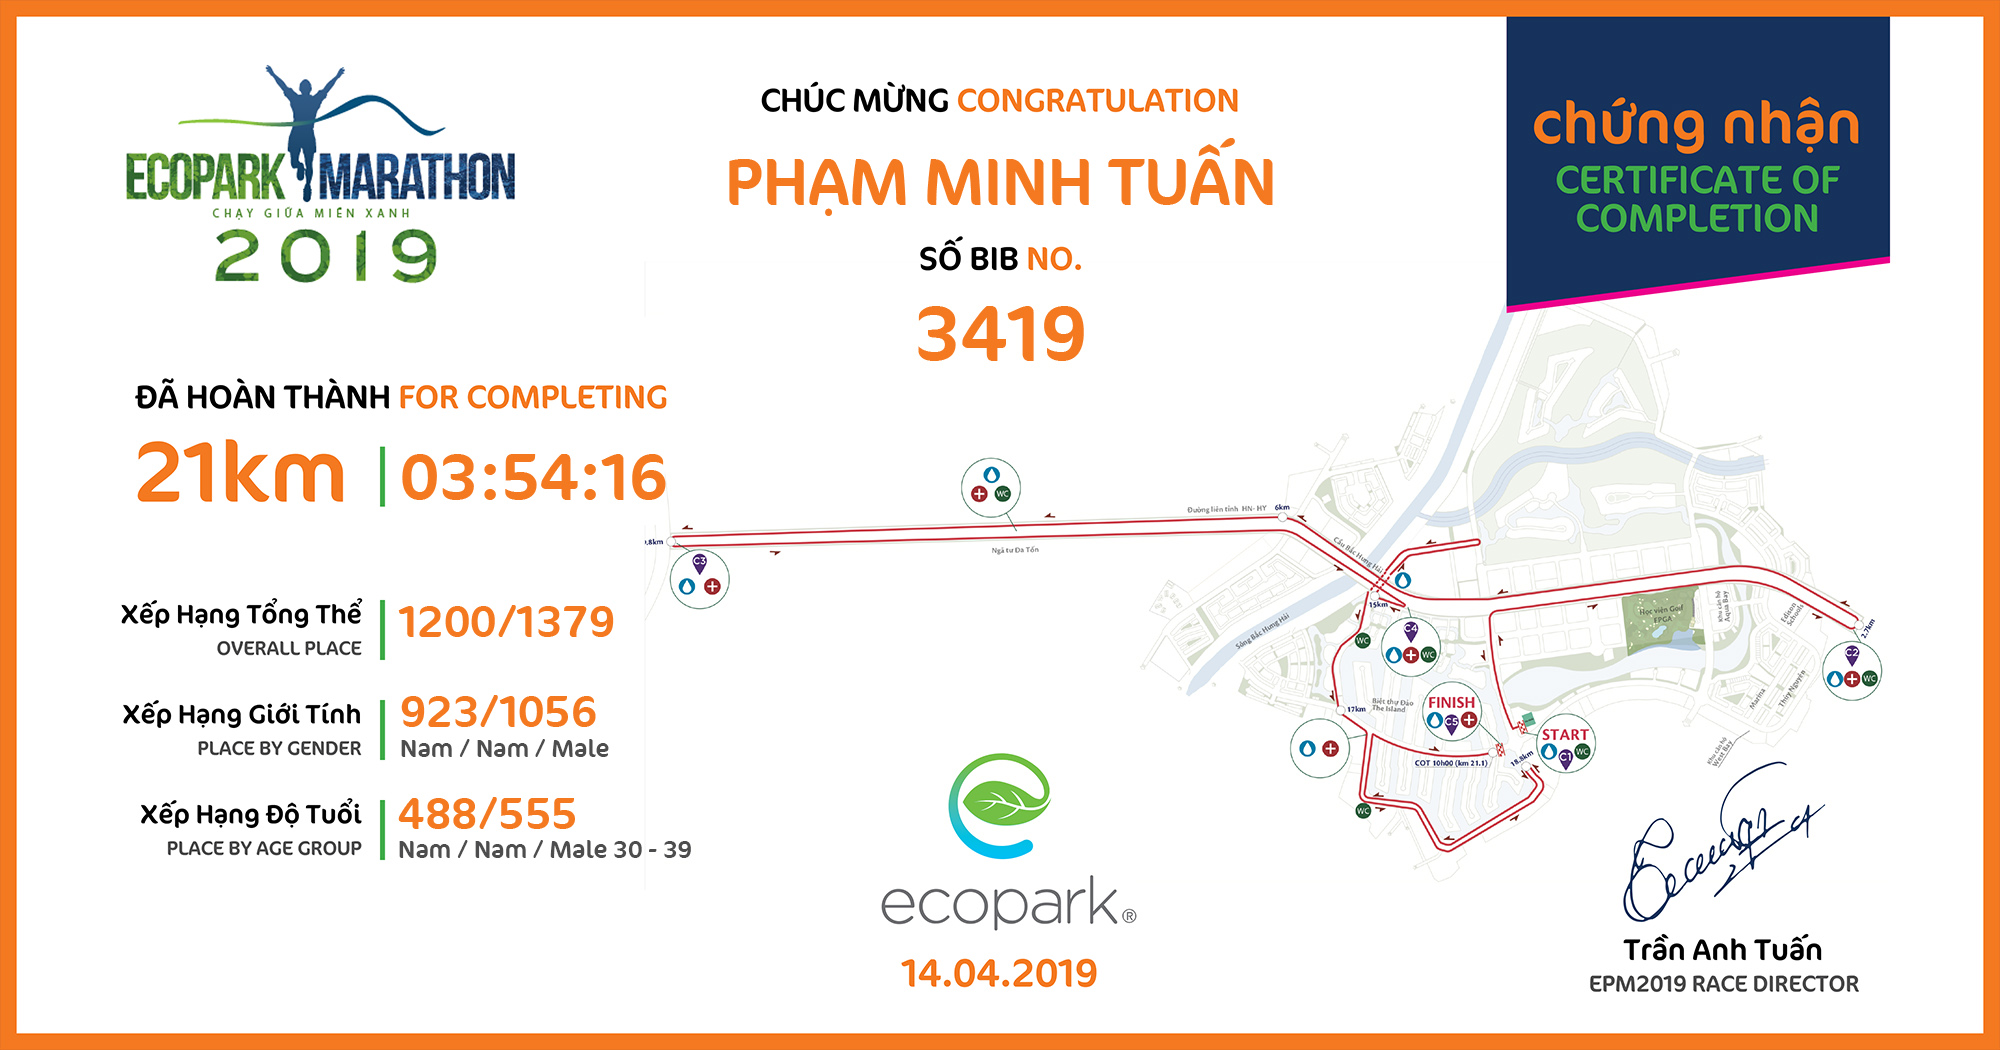 3419 - Phạm Minh Tuấn